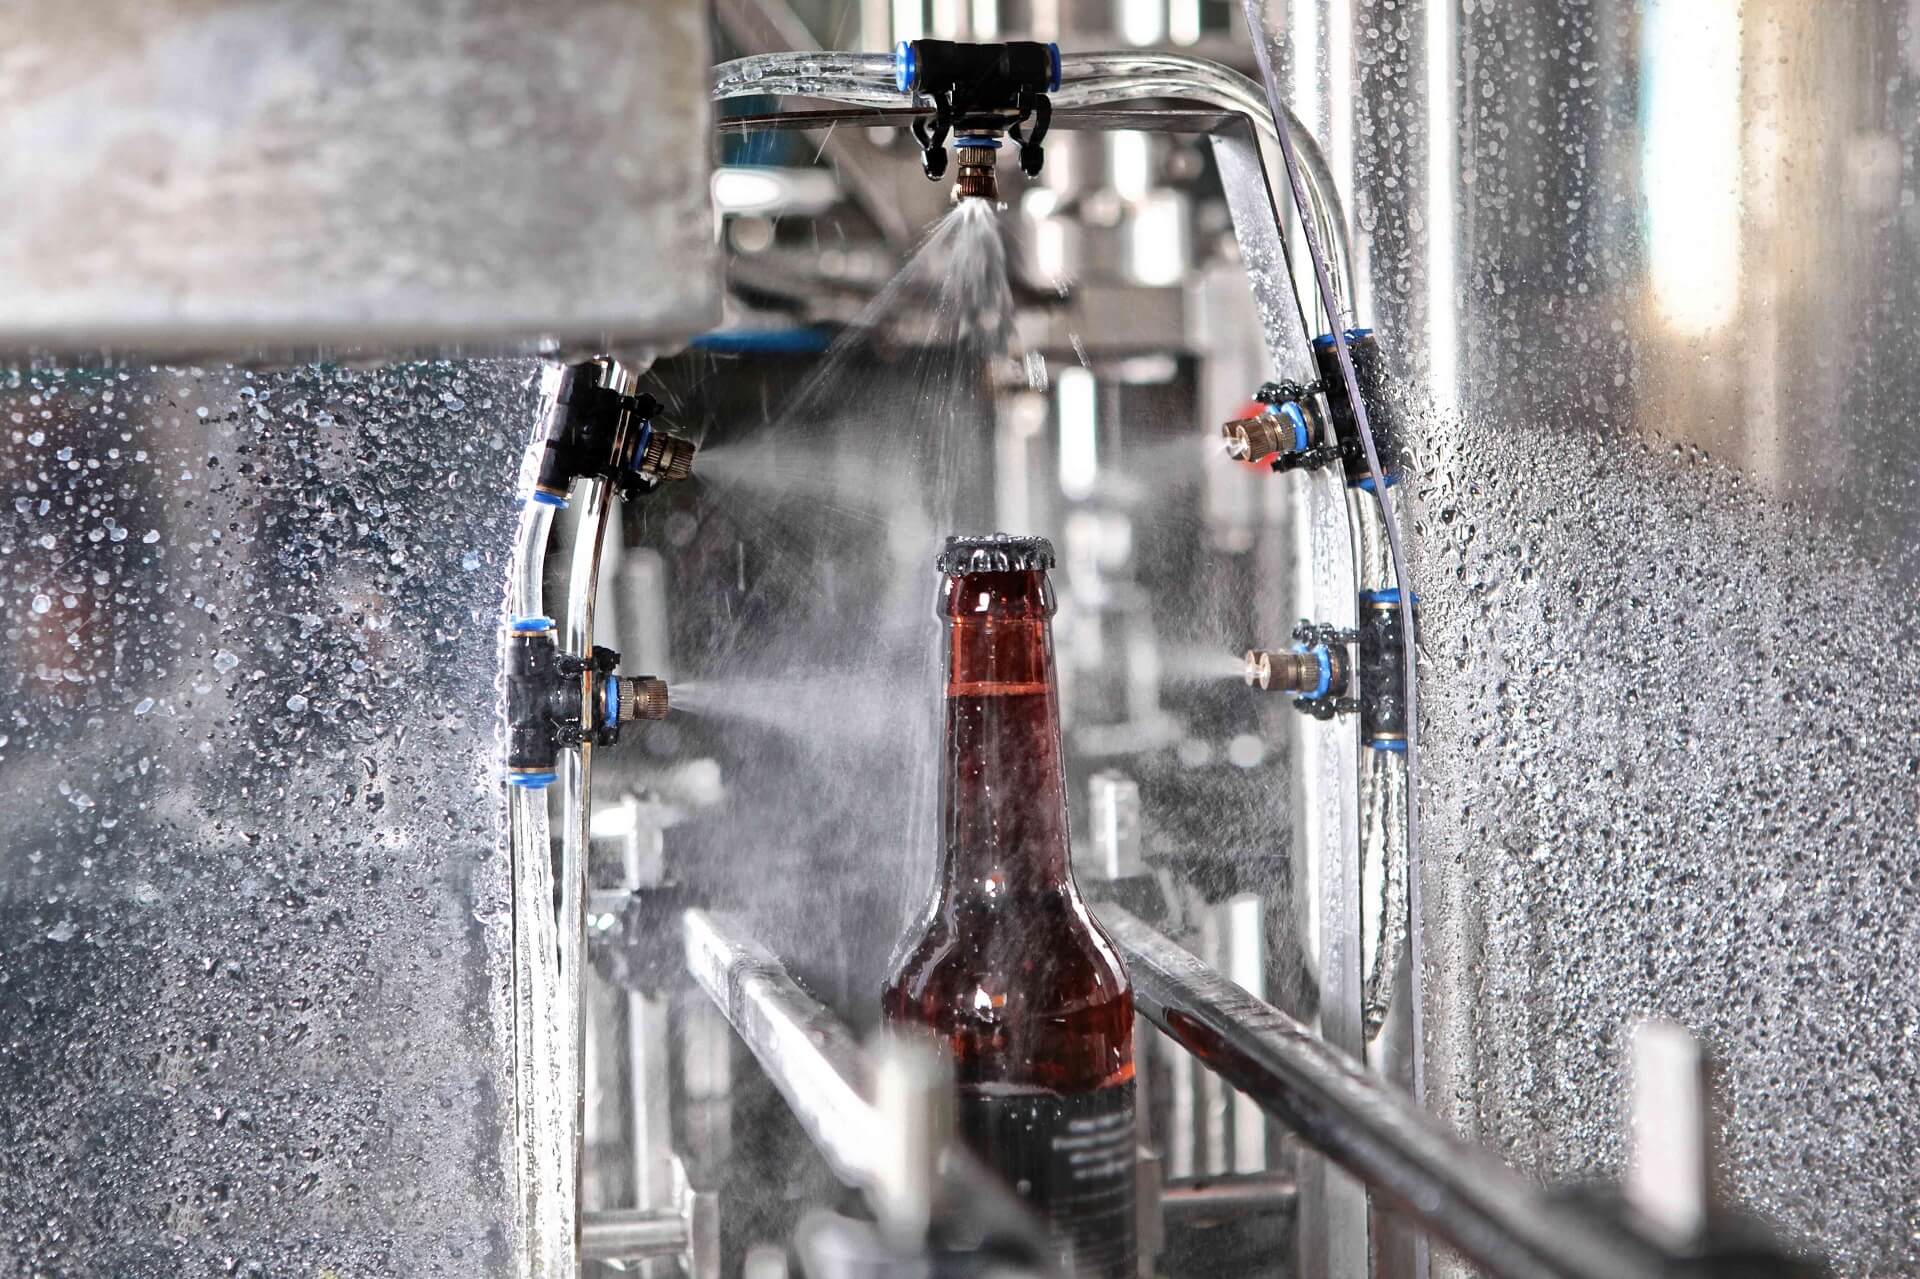 水流下传送带上的一瓶啤酒的细节。只有瓶子是焦点。生产的概念。gydF4y2Ba